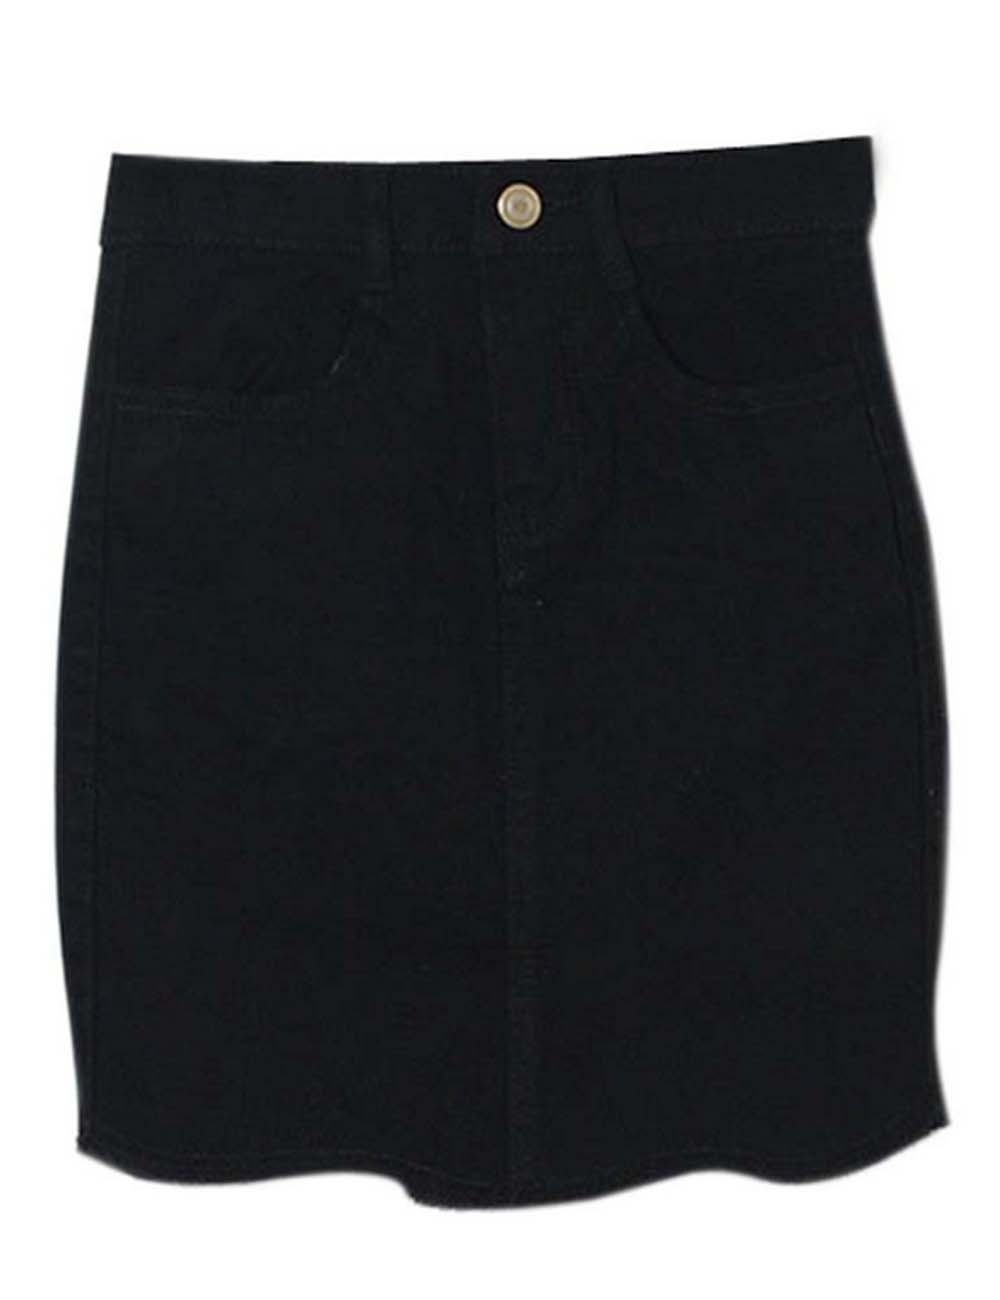 Black Denim Skirt for Women Summer Sheath Skirt, Medium